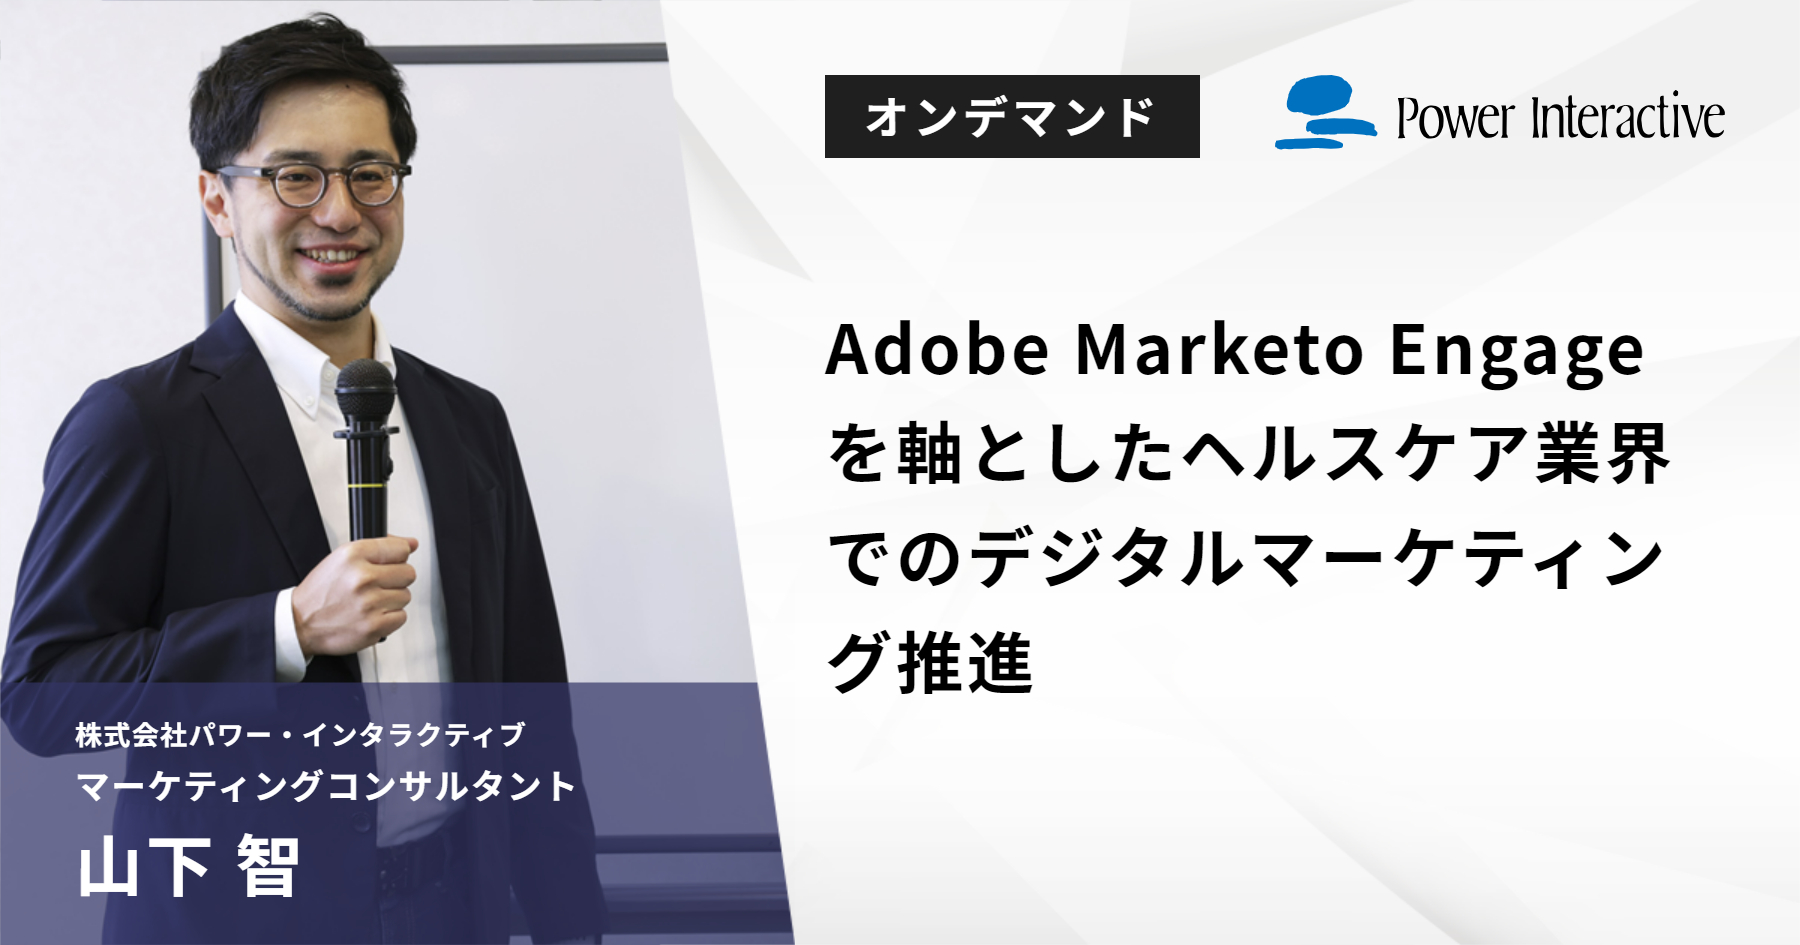 Adobe Marketo Engageを軸としたヘルスケア業界でのデジタルマーケティング推進